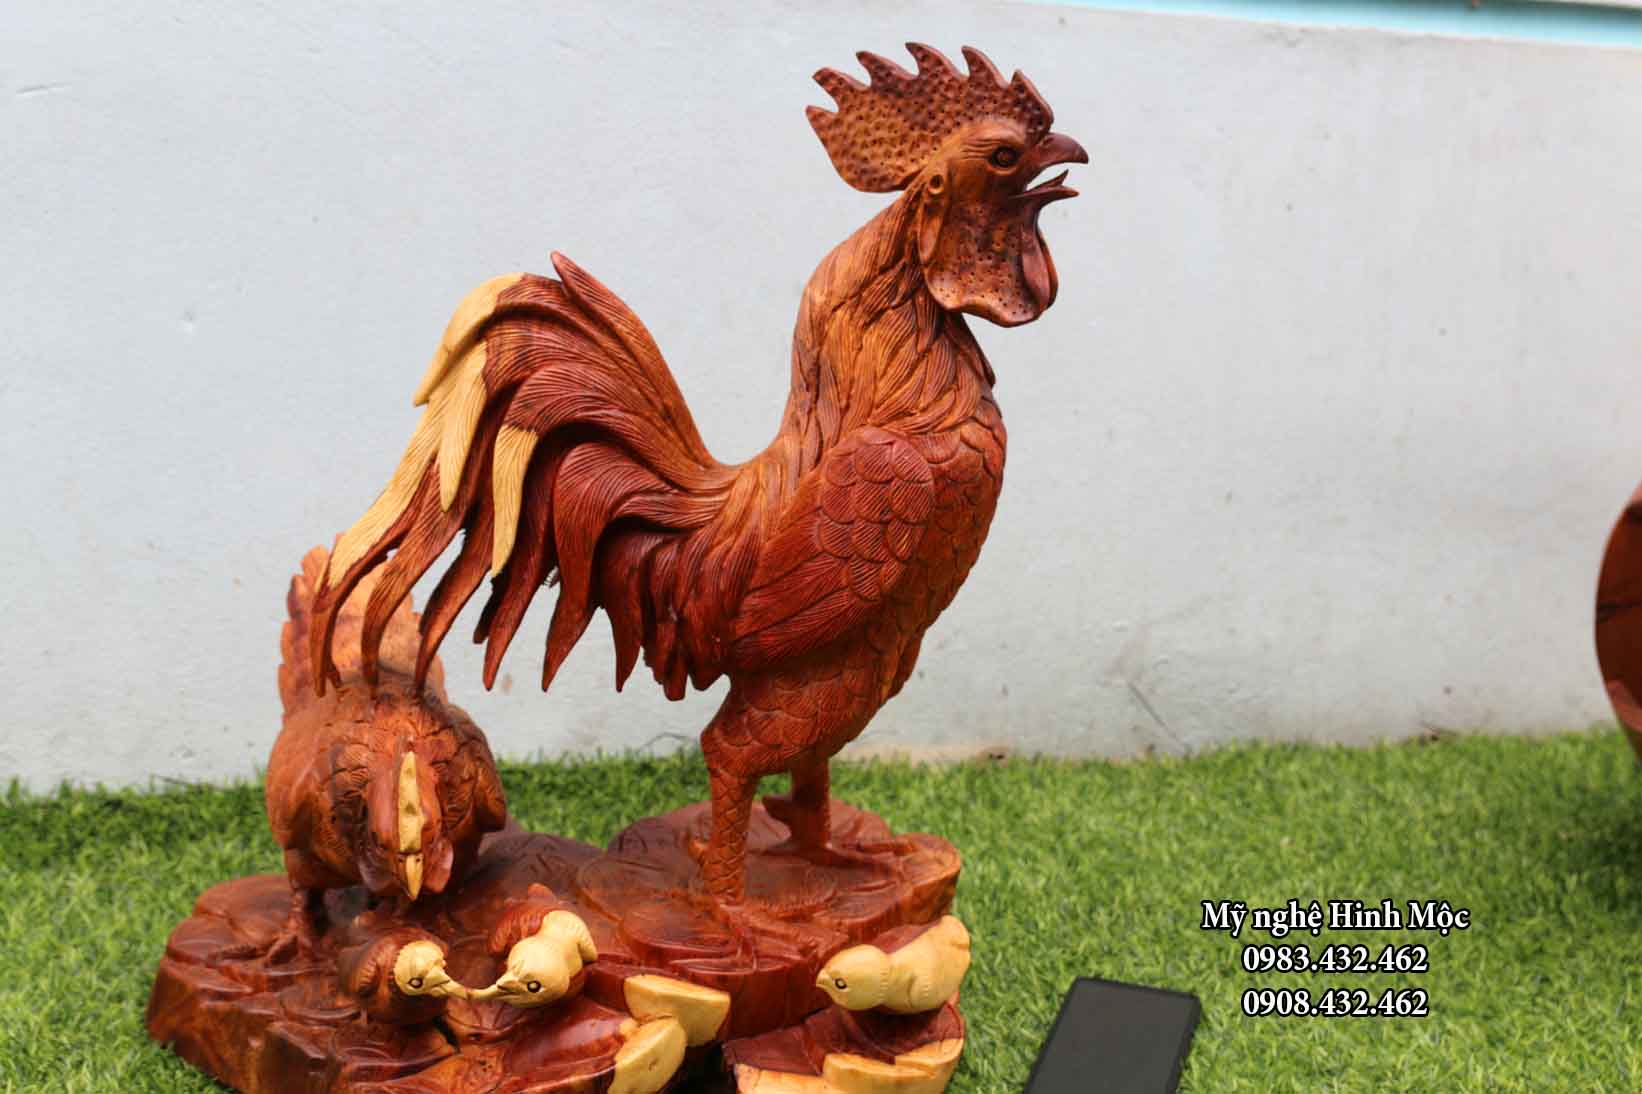 Tượng gia đình gà: Đây là một tác phẩm nghệ thuật đặc biệt, tượng trưng cho tình gia đình trong các gia đình gà. Bức tượng chắc chắn sẽ khiến bạn thích thú và muốn đặt nó trong ngôi nhà của mình.